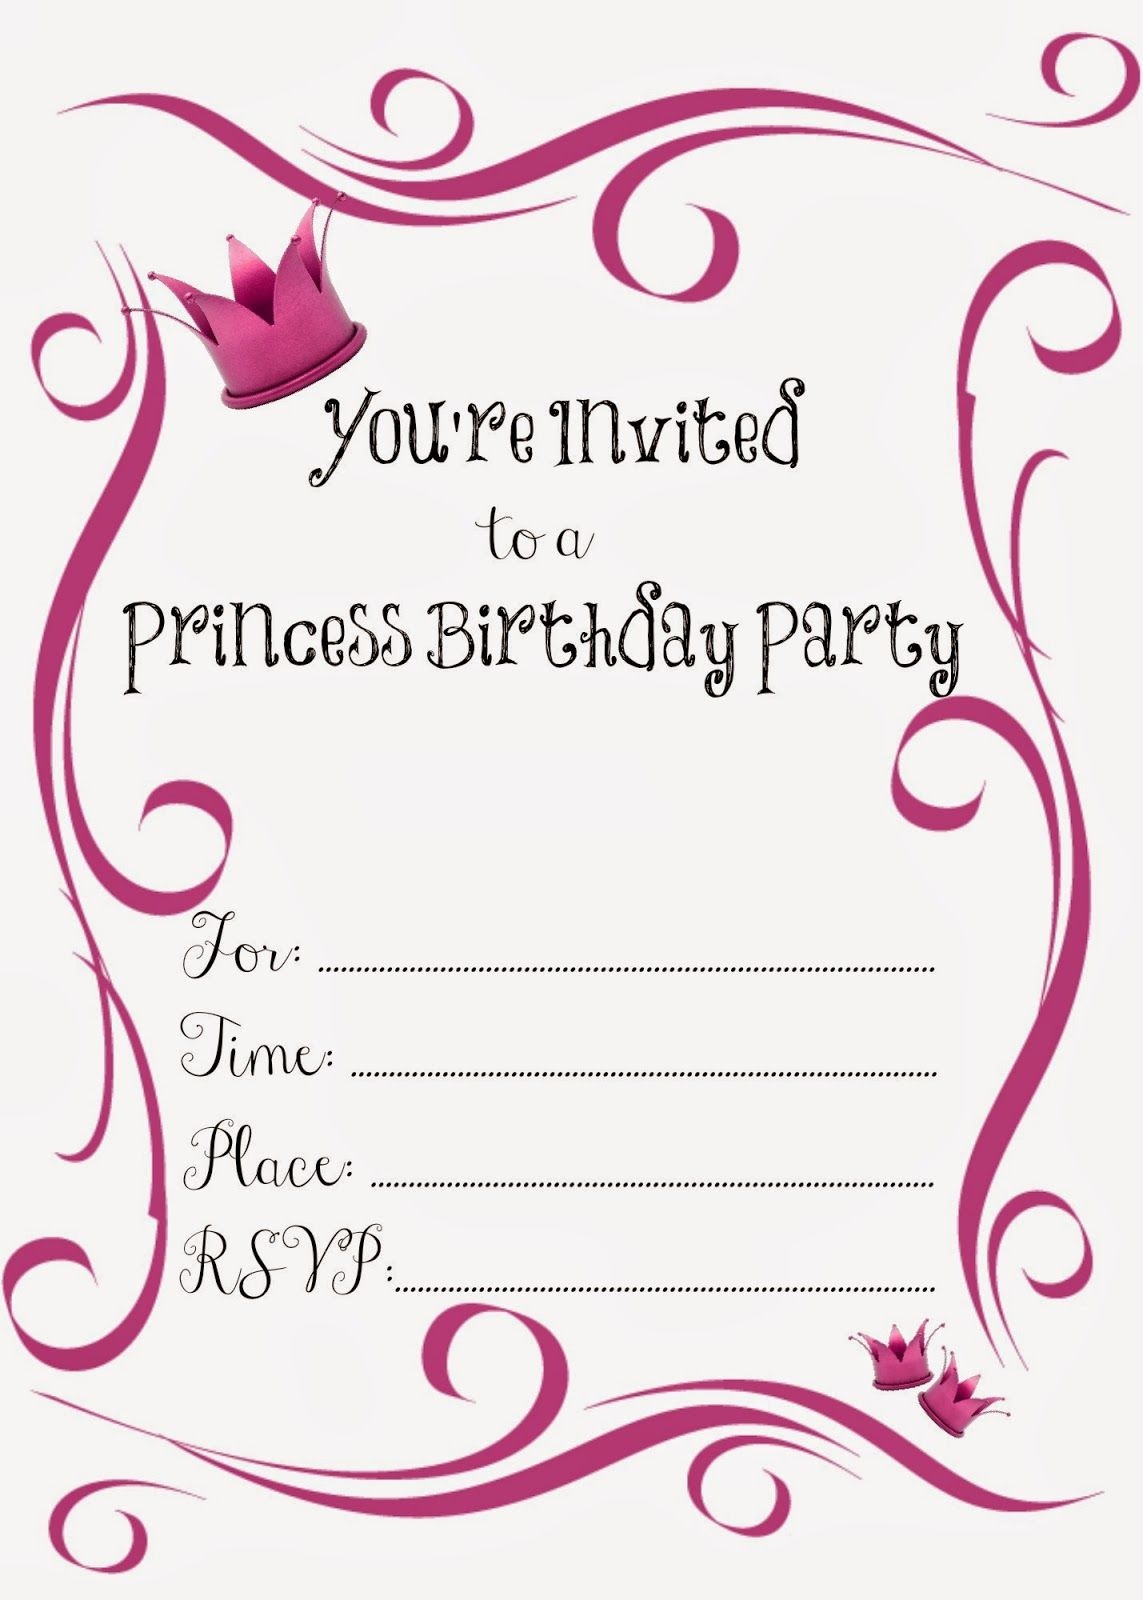 Free Printable Princess Birthday Party Invitations #freeprintables - Free Princess Printable Invitations